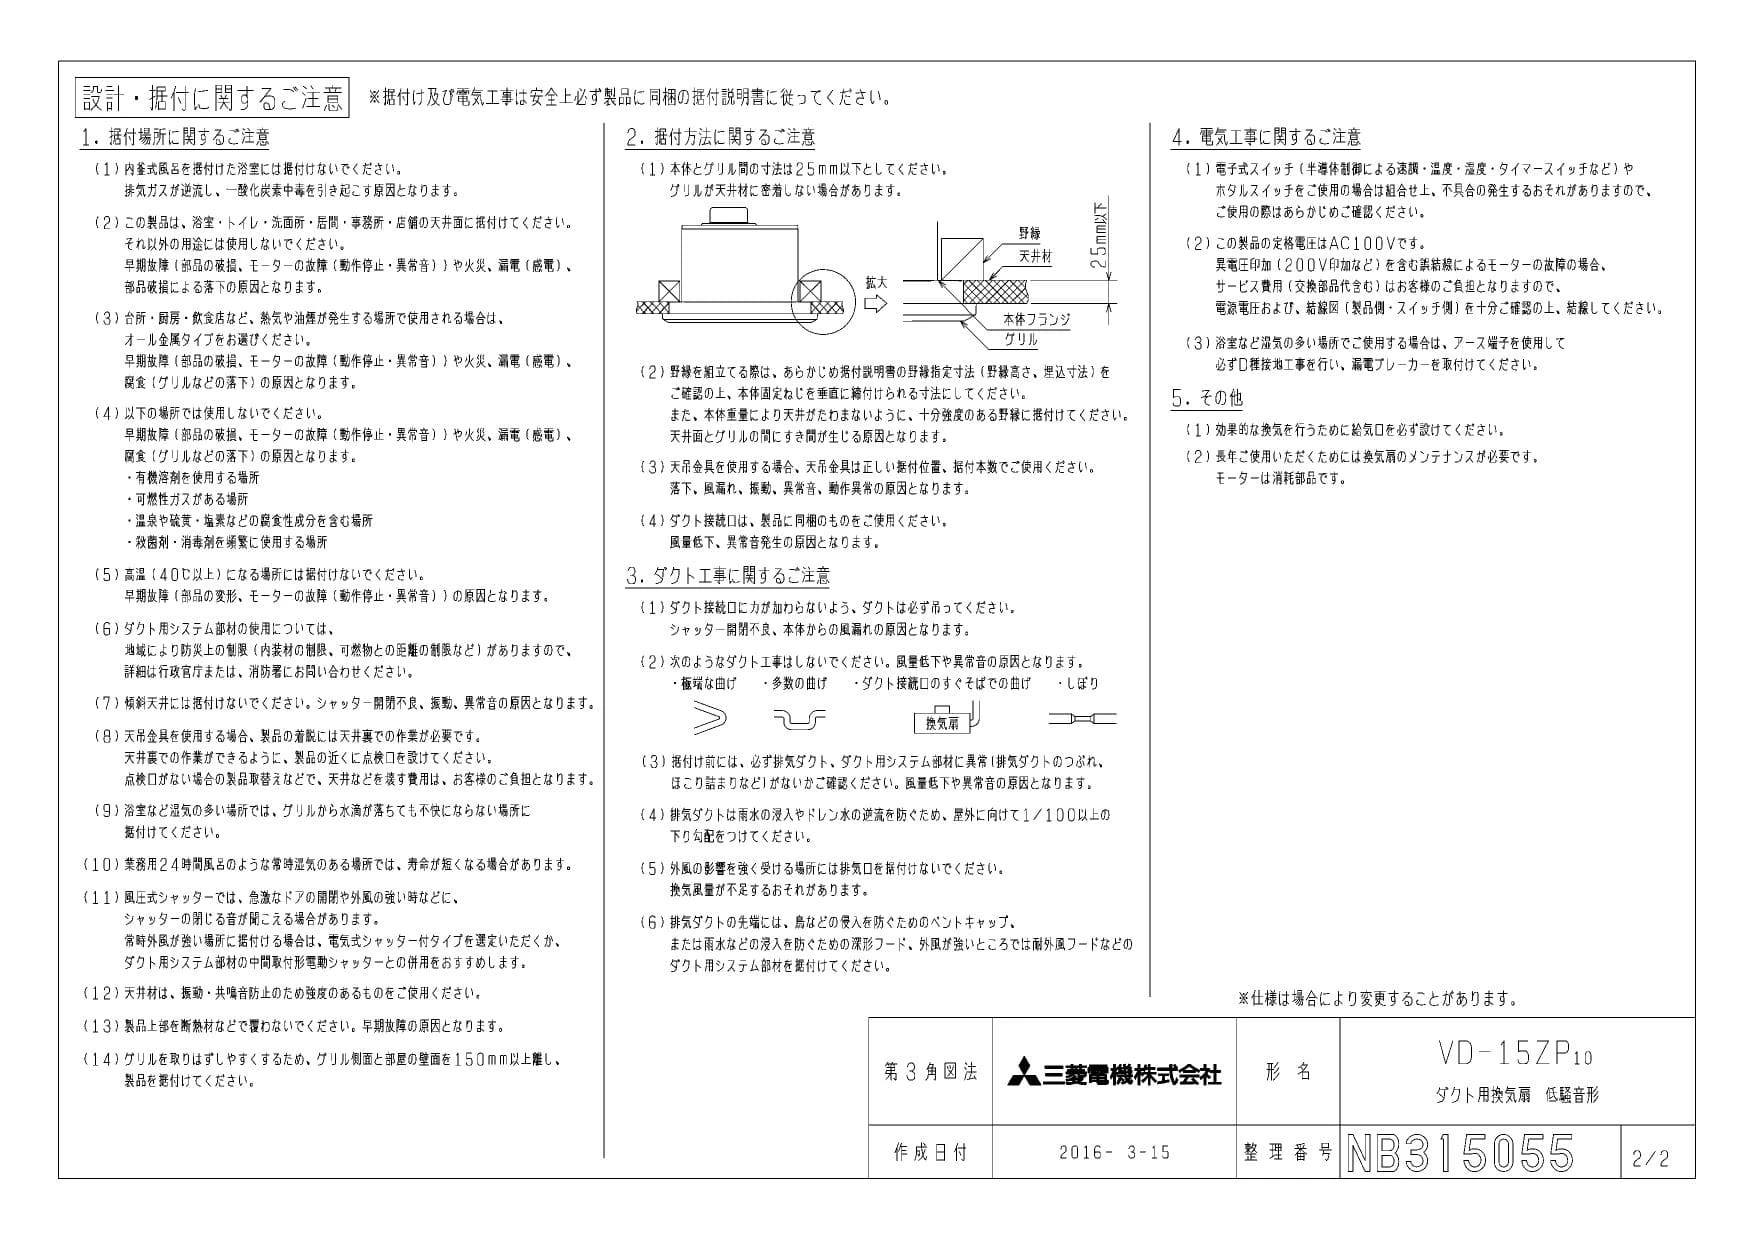 三菱電機 VD-15ZP10商品図面 | 通販 プロストア ダイレクト